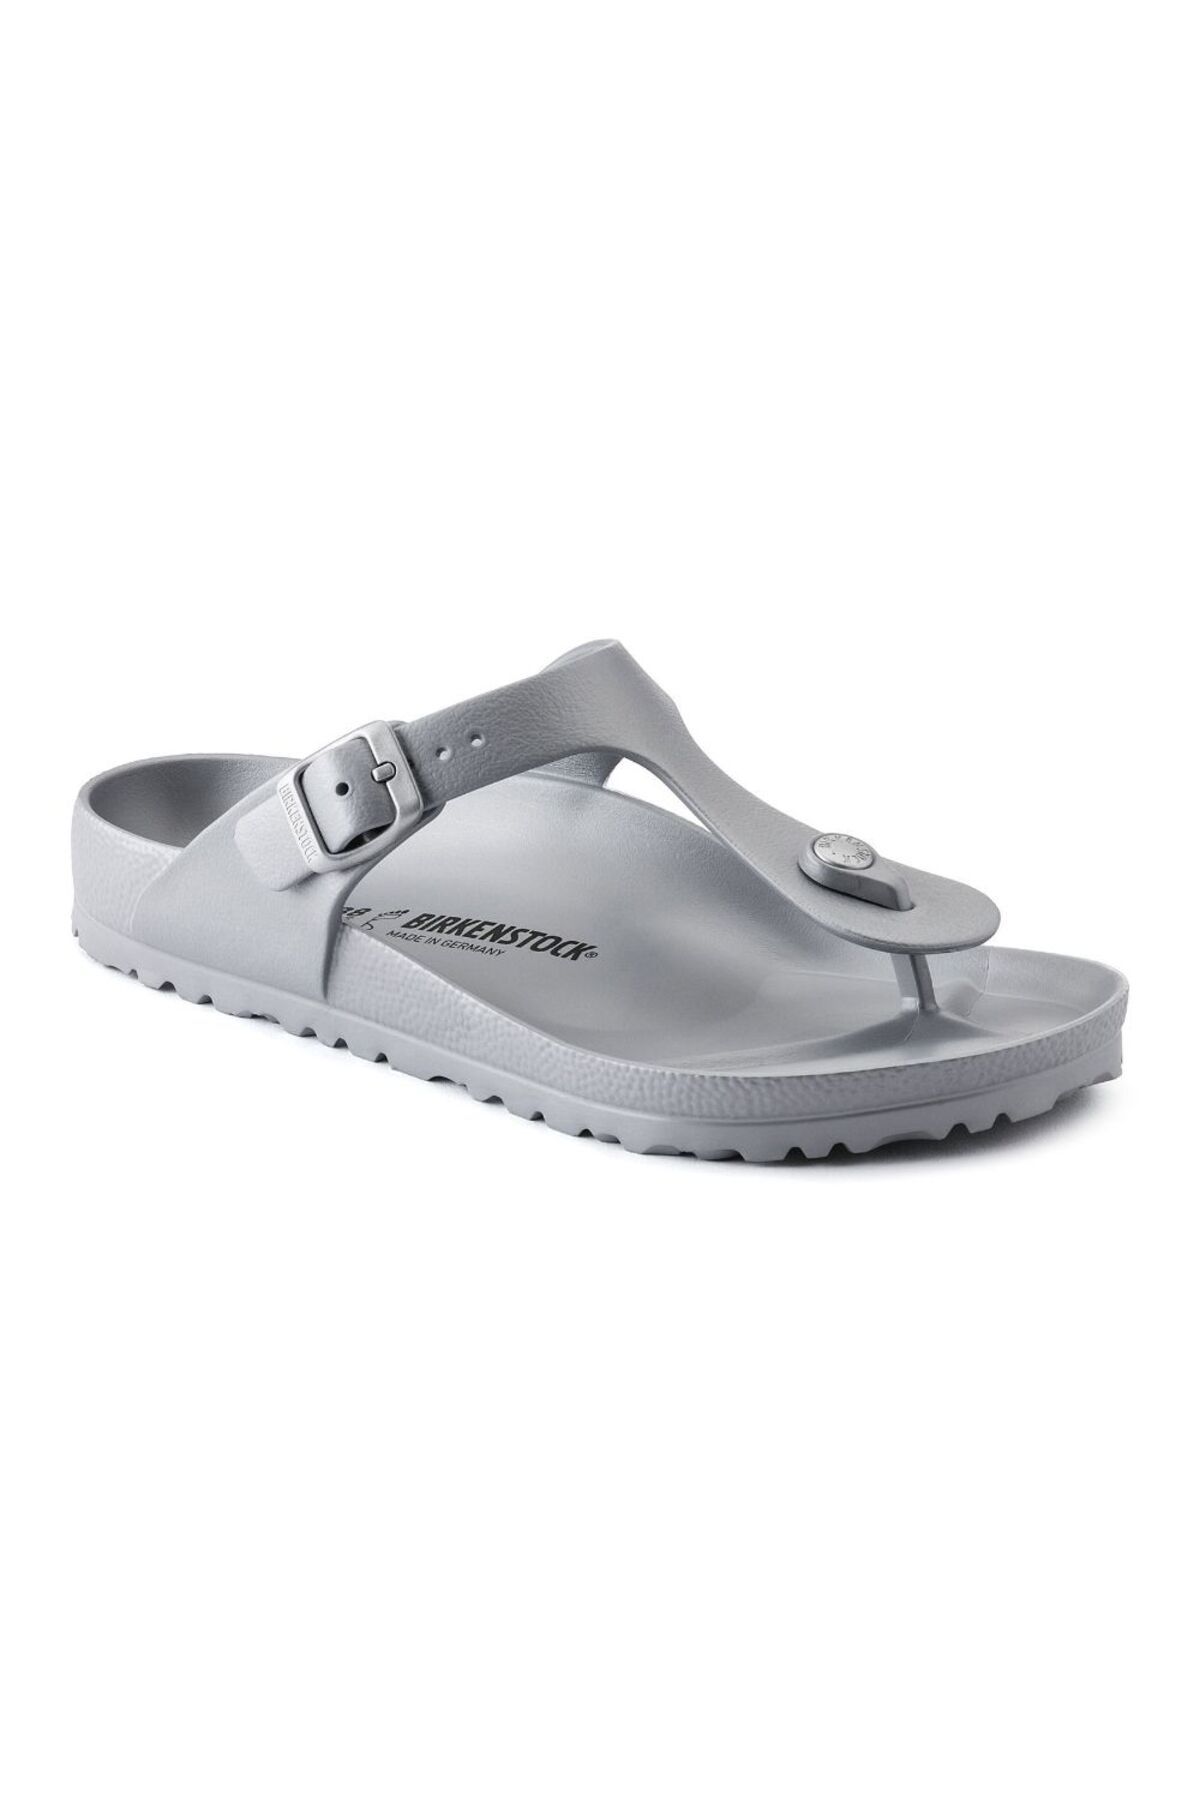 Birkenstock Kadın Metallic Silver Kadın Terlik/sandalet 1003496-metallic S